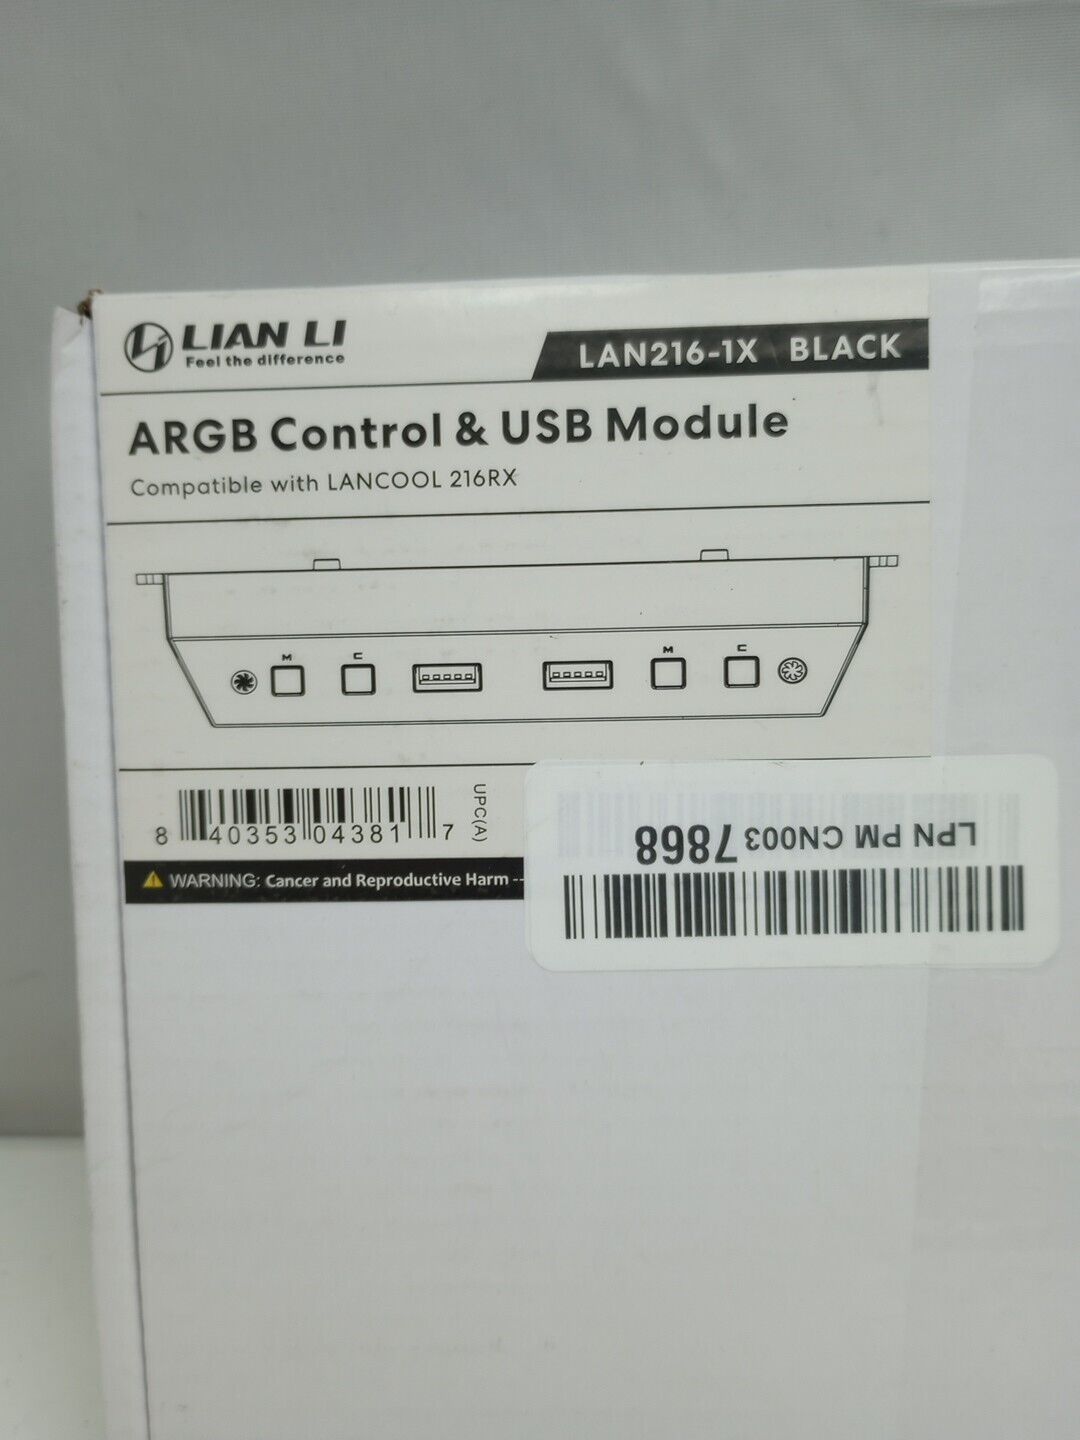 LIAN LI LAN216-1X ARGB CONTROL & USB MODULE (BLACK) FIT LANCOOL 216 38